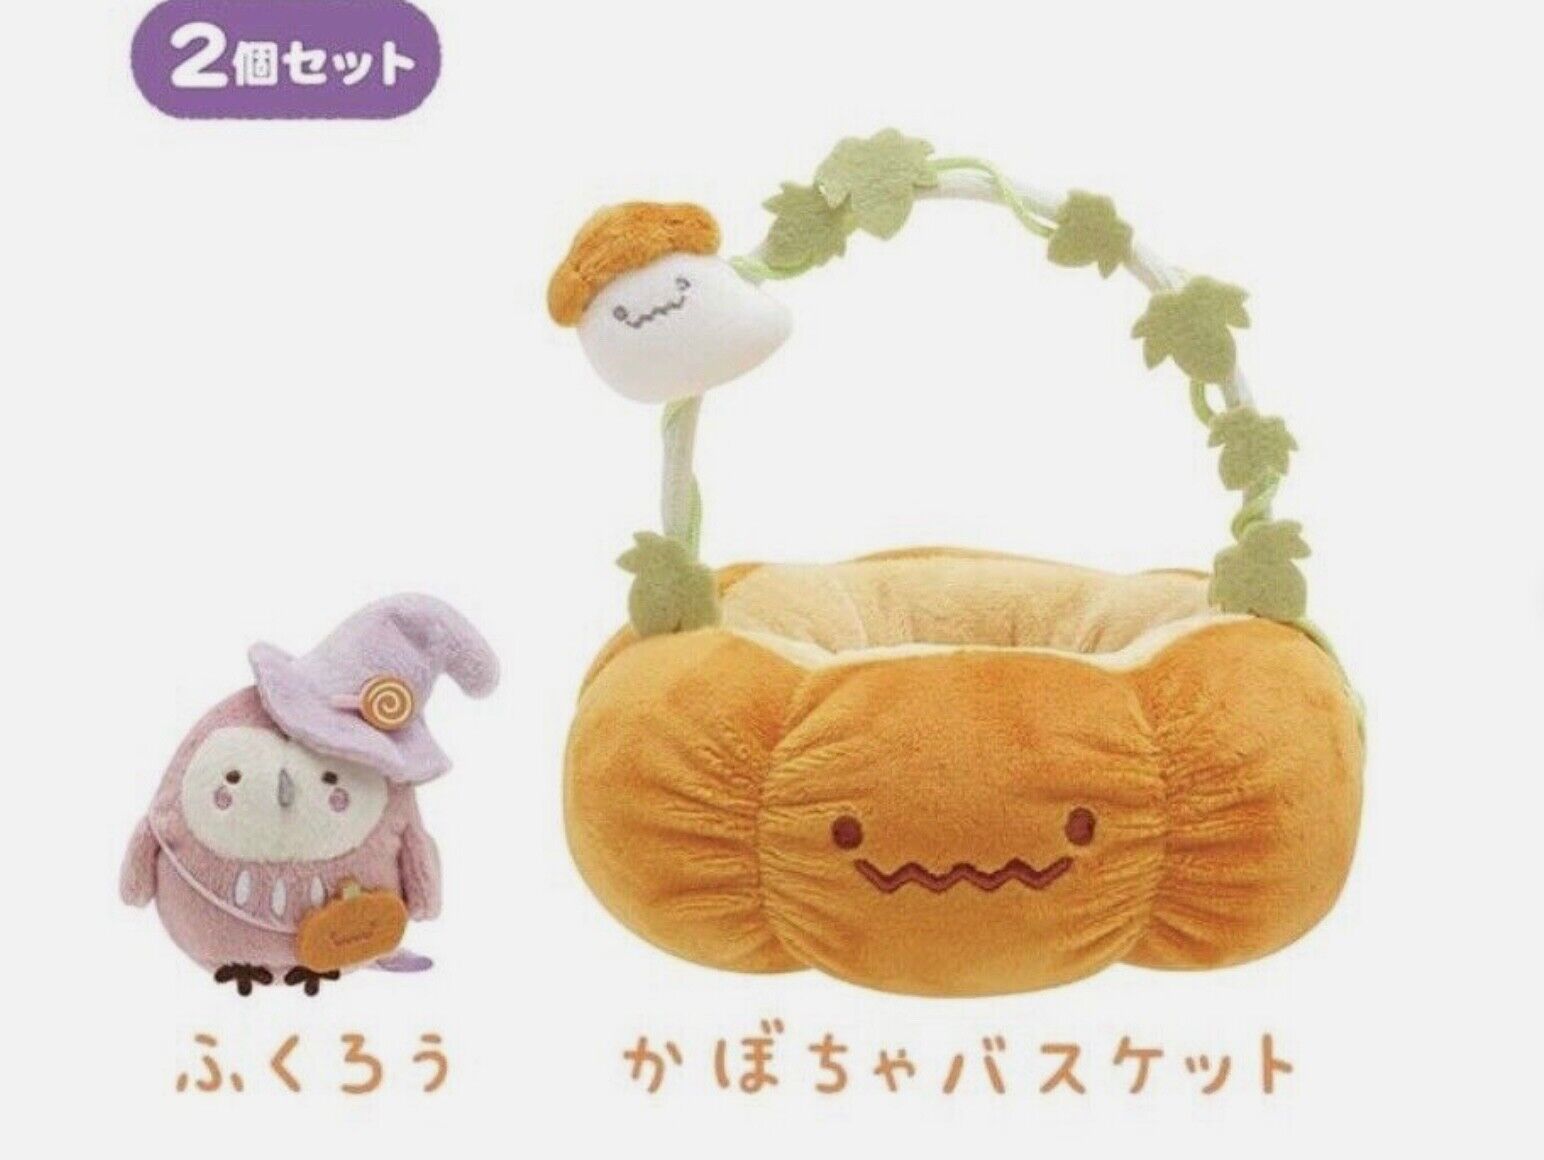 San-x Sumikko Gurashi Halloween Pumpkin basket & Owl kawaii